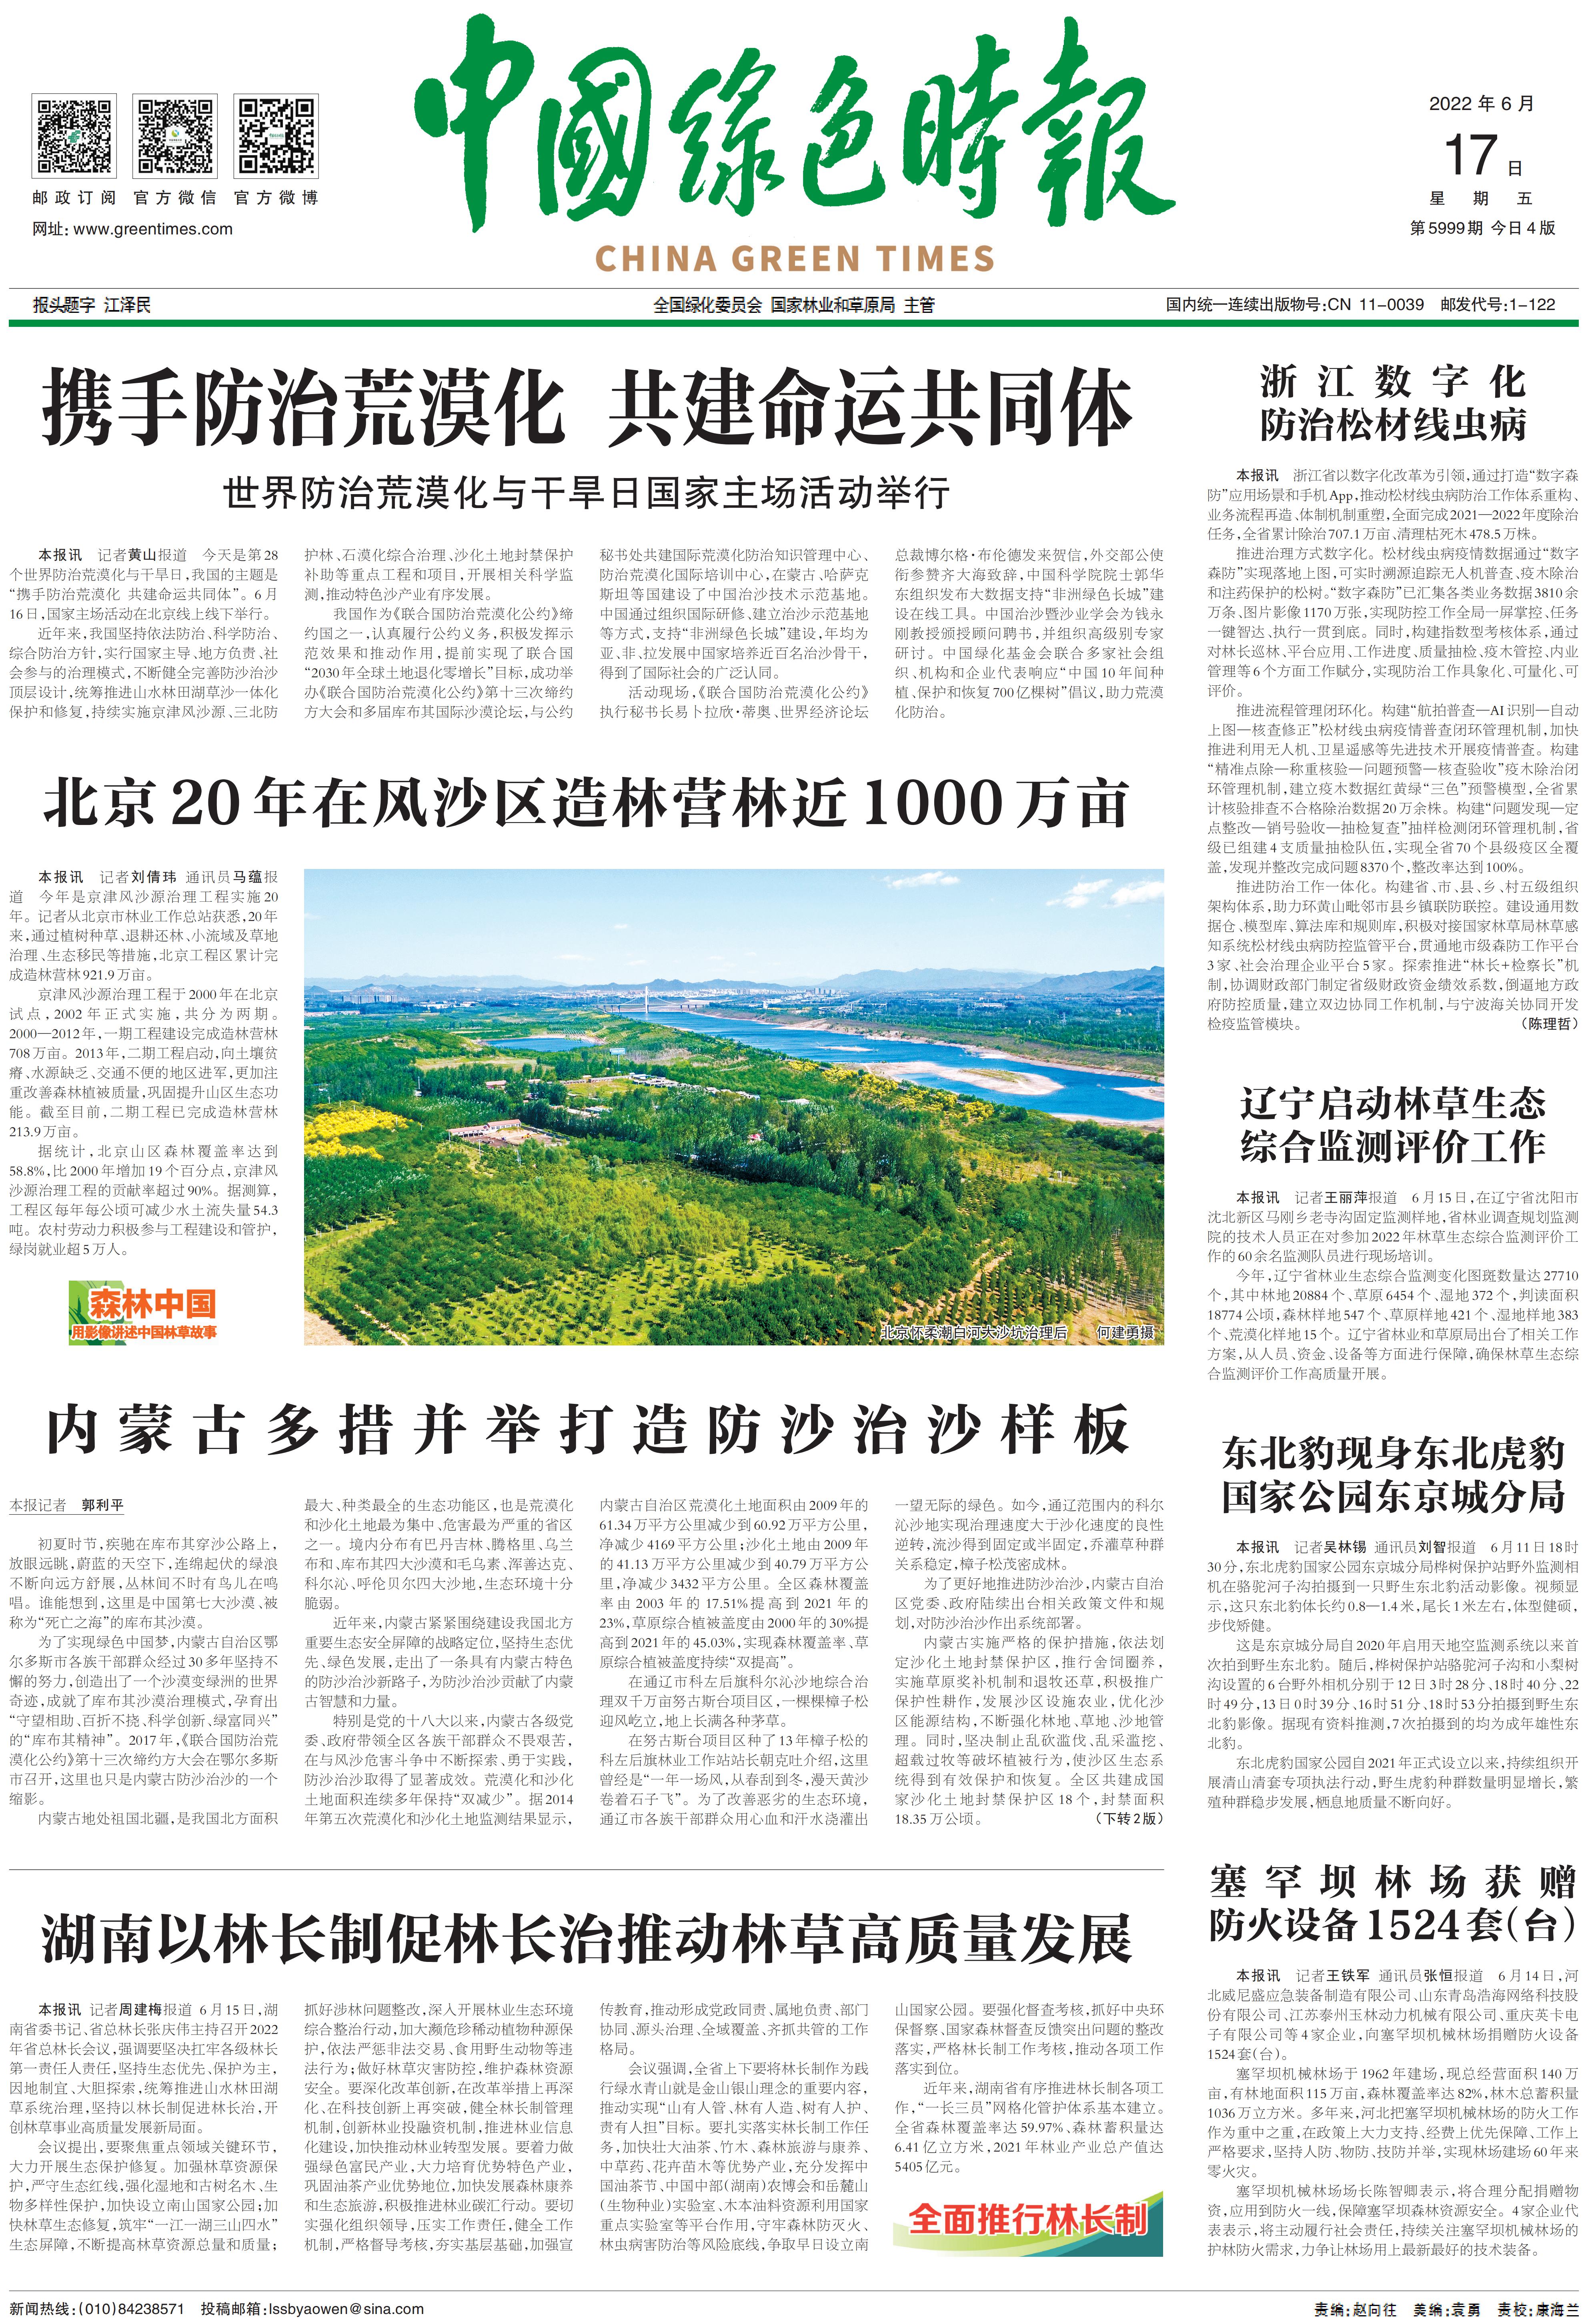 0617中国绿色时报-北京20年在风沙区造林营林近1000万亩_00.jpg